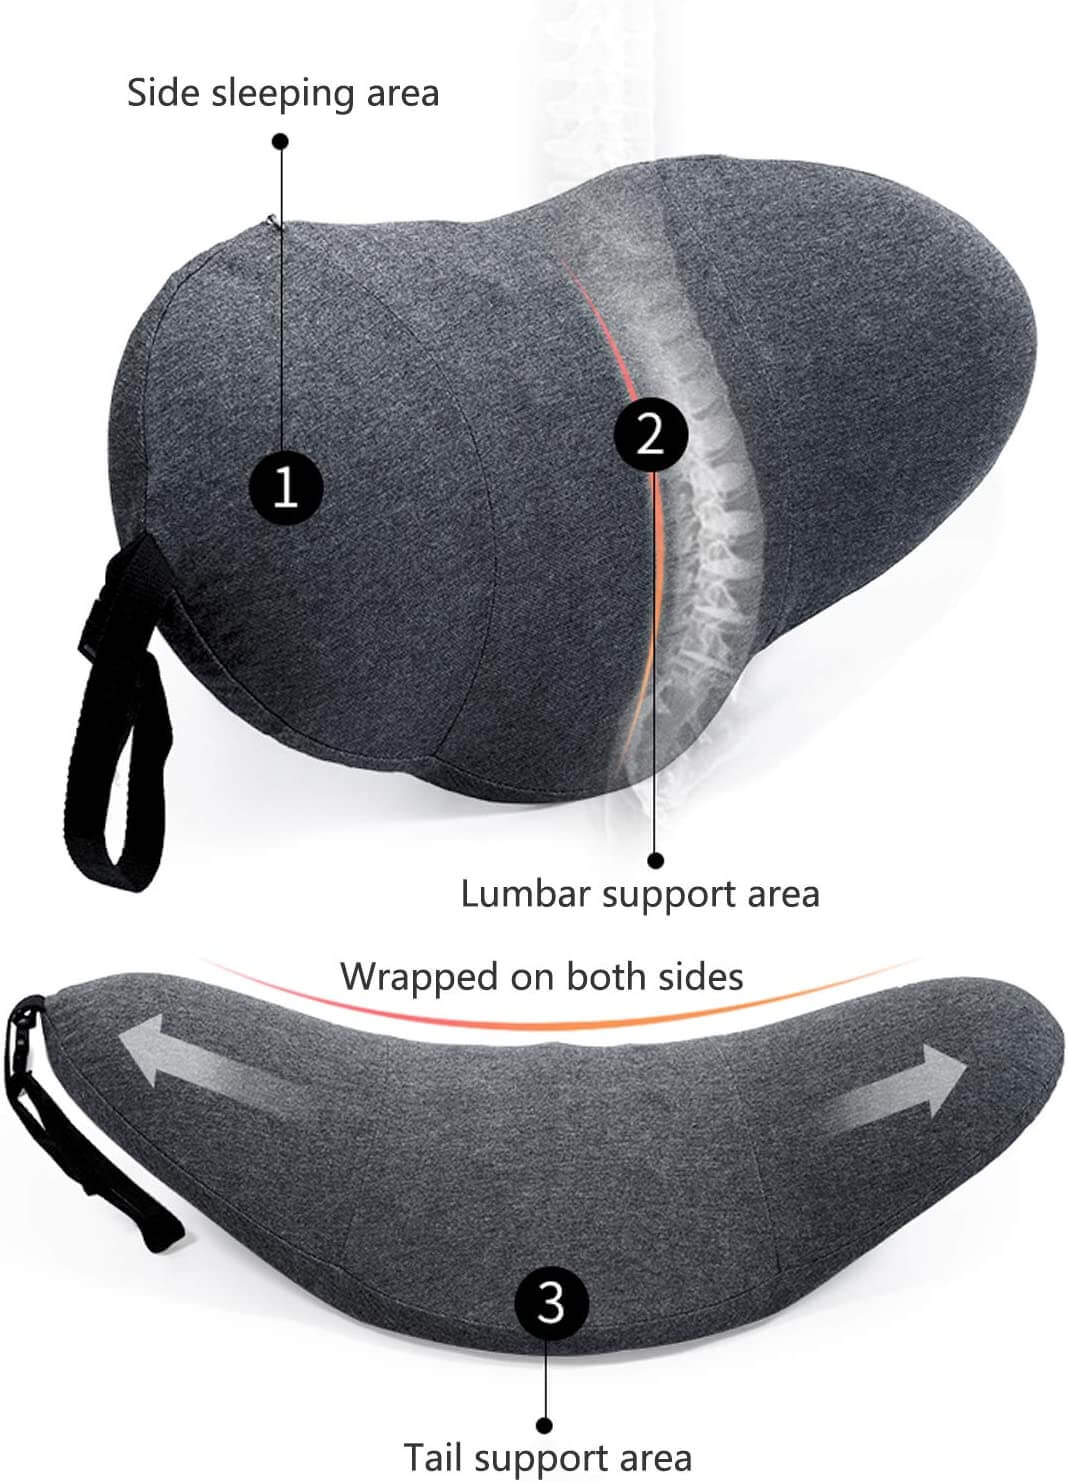 lumbar support pillow's materila show